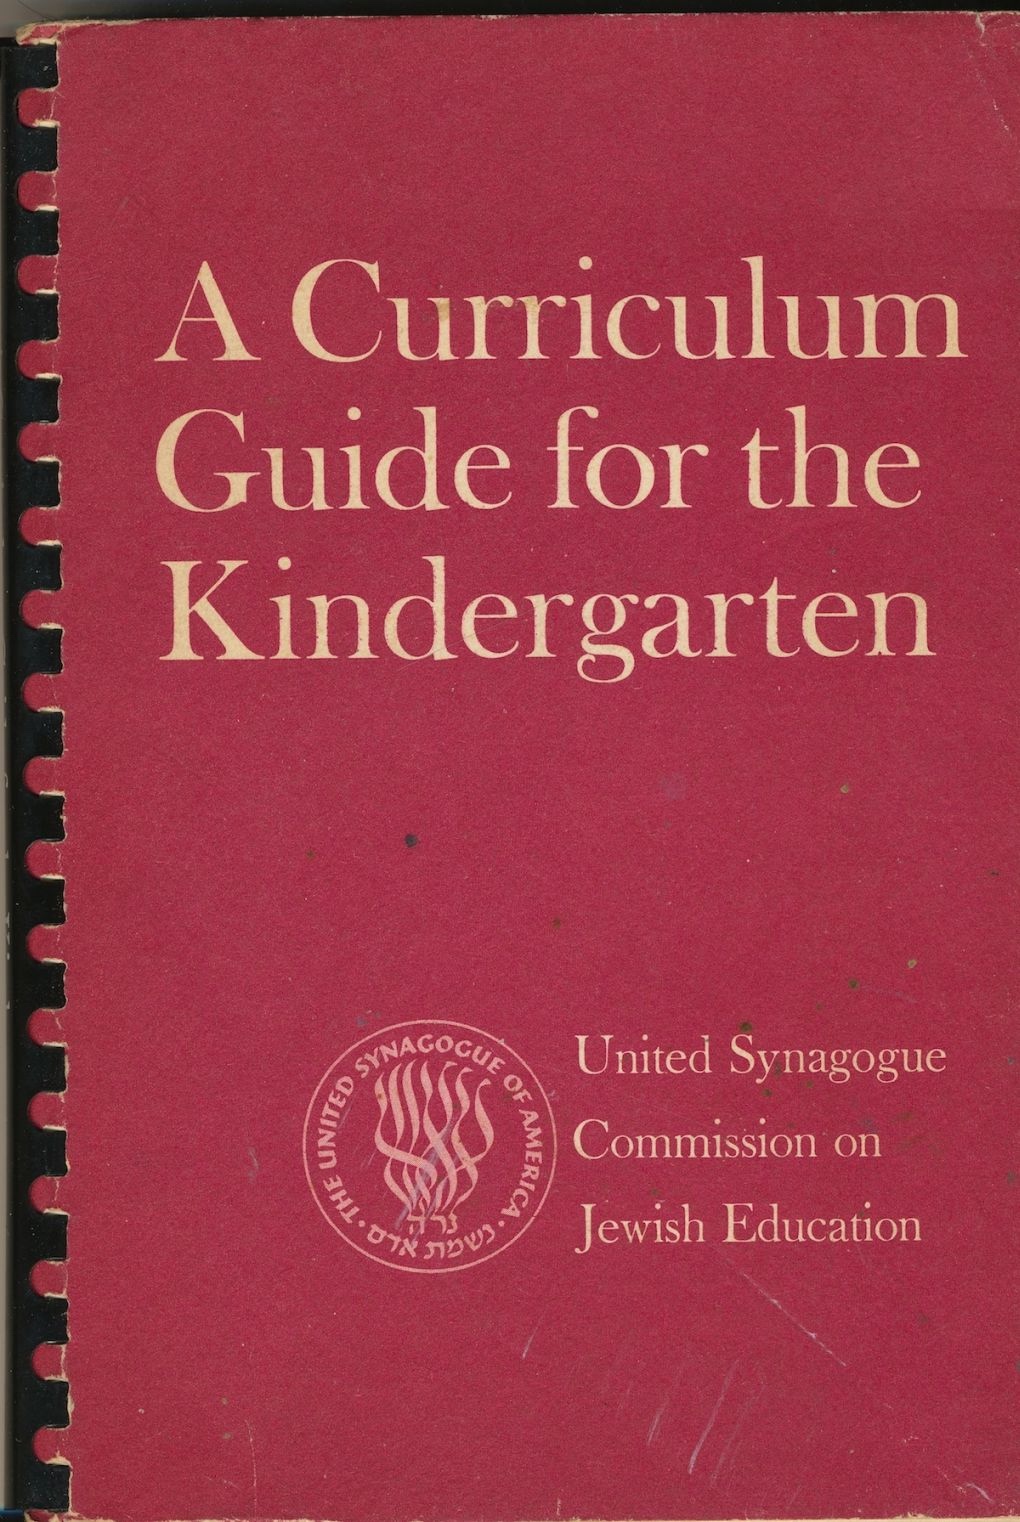 CHANOVER, HYMAN (CHAIR AND EDITOR) ; FRANCES GELBART; LEAH LESHEFSKY, ASENATH ROSENBERG - A Curriculum Guide for the Kindergarten